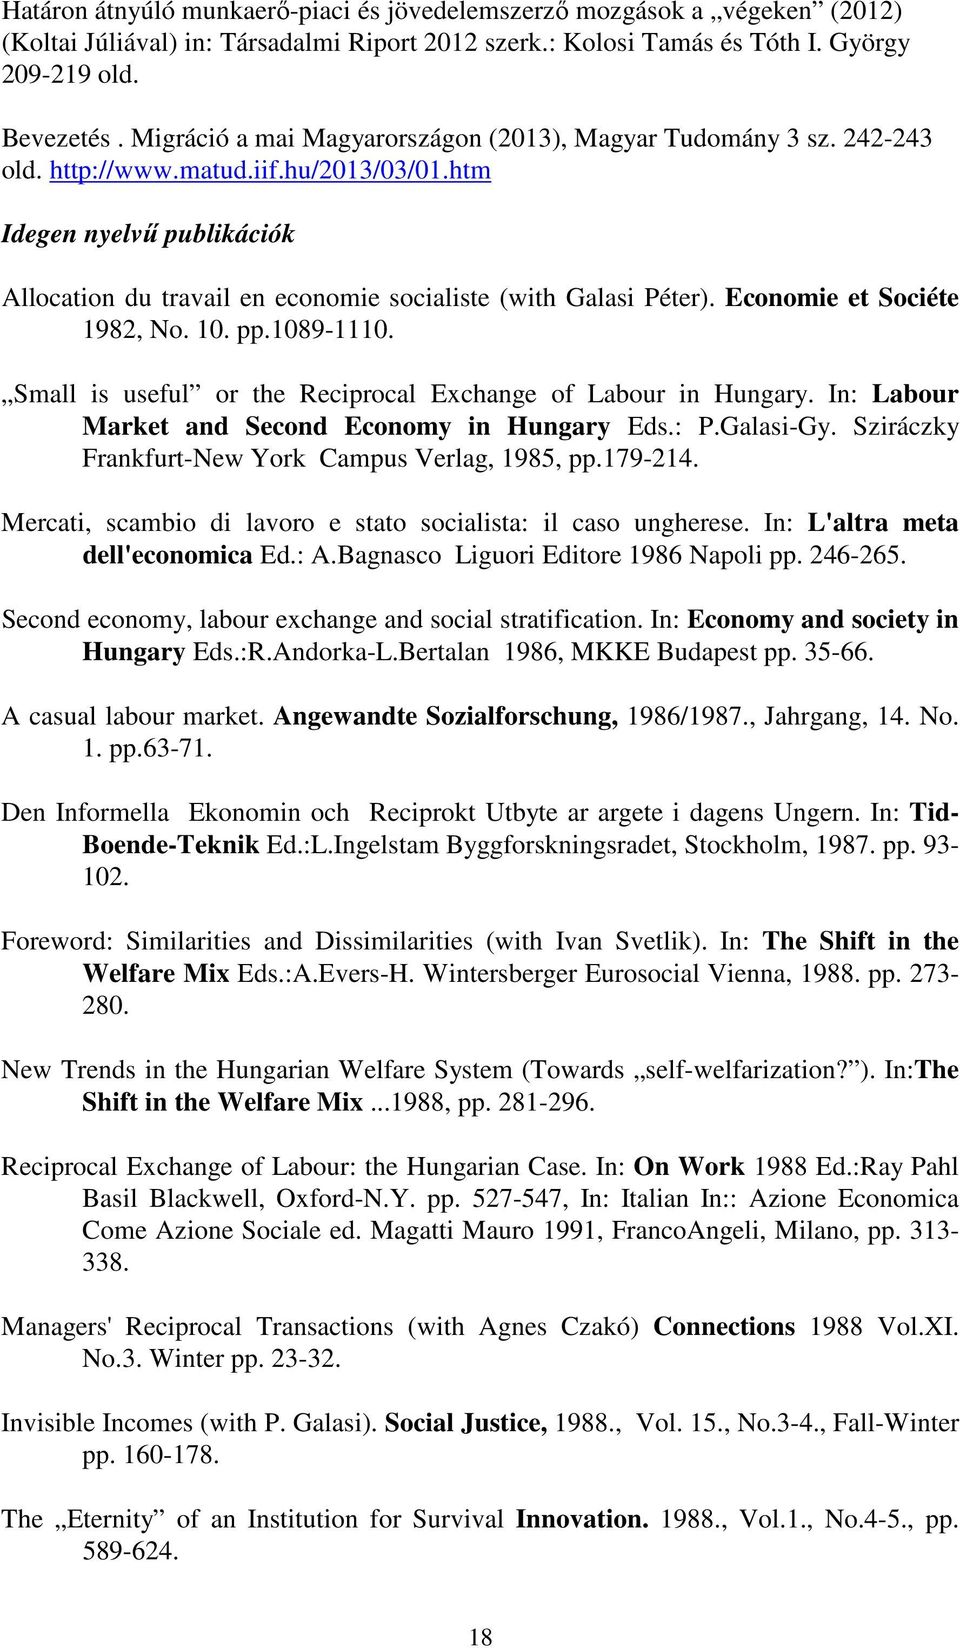 htm Idegen nyelvő publikációk Allocation du travail en economie socialiste (with Galasi Péter). Economie et Sociéte 1982, No. 10. pp.1089-1110.